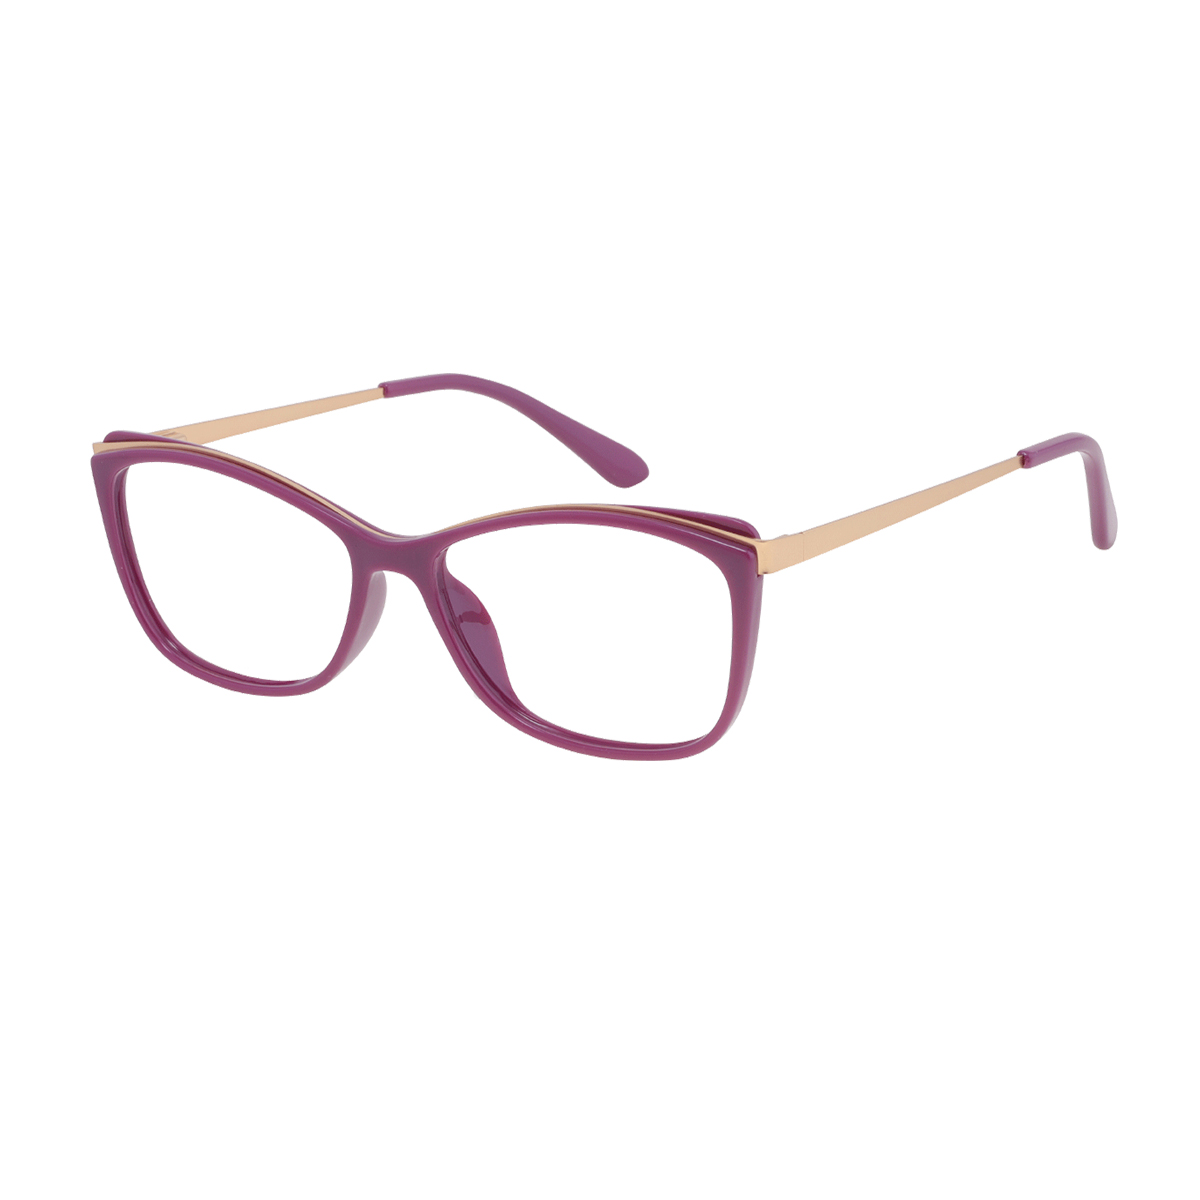 Gela - Rectangle Purple-gold Reading Glasses for Women